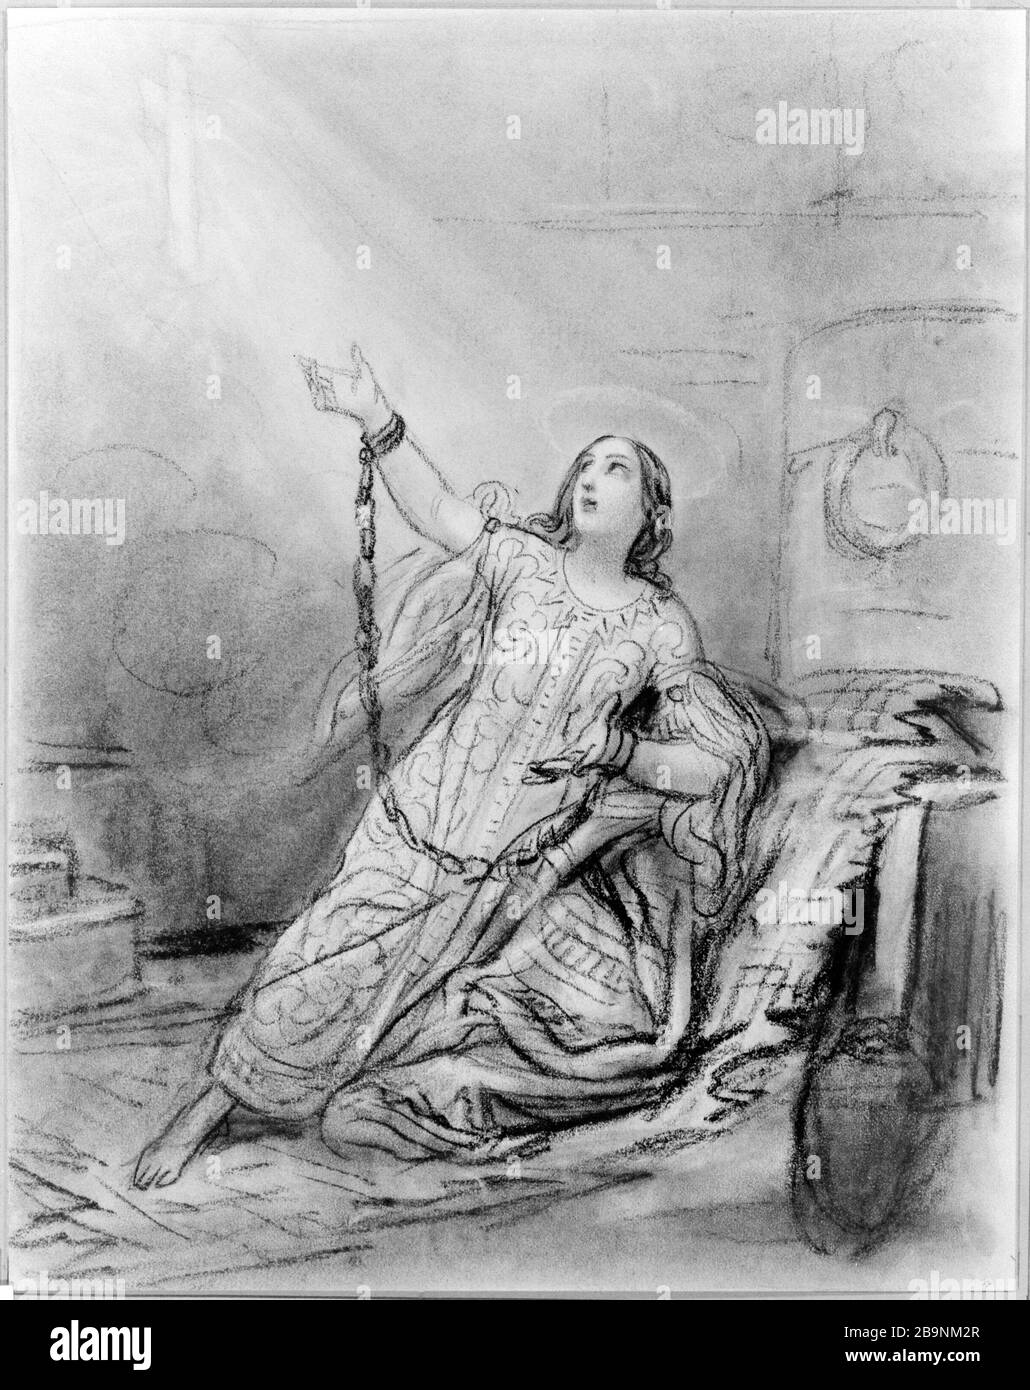 SAINTE ALEXANDRINE Octave Tassaert (1800-1874). "Sainte Alexandrine". Fusain sur papier crème, XIXème siècle. Musée des Beaux-Arts de la Ville de Paris, Petit Palais. Foto Stock